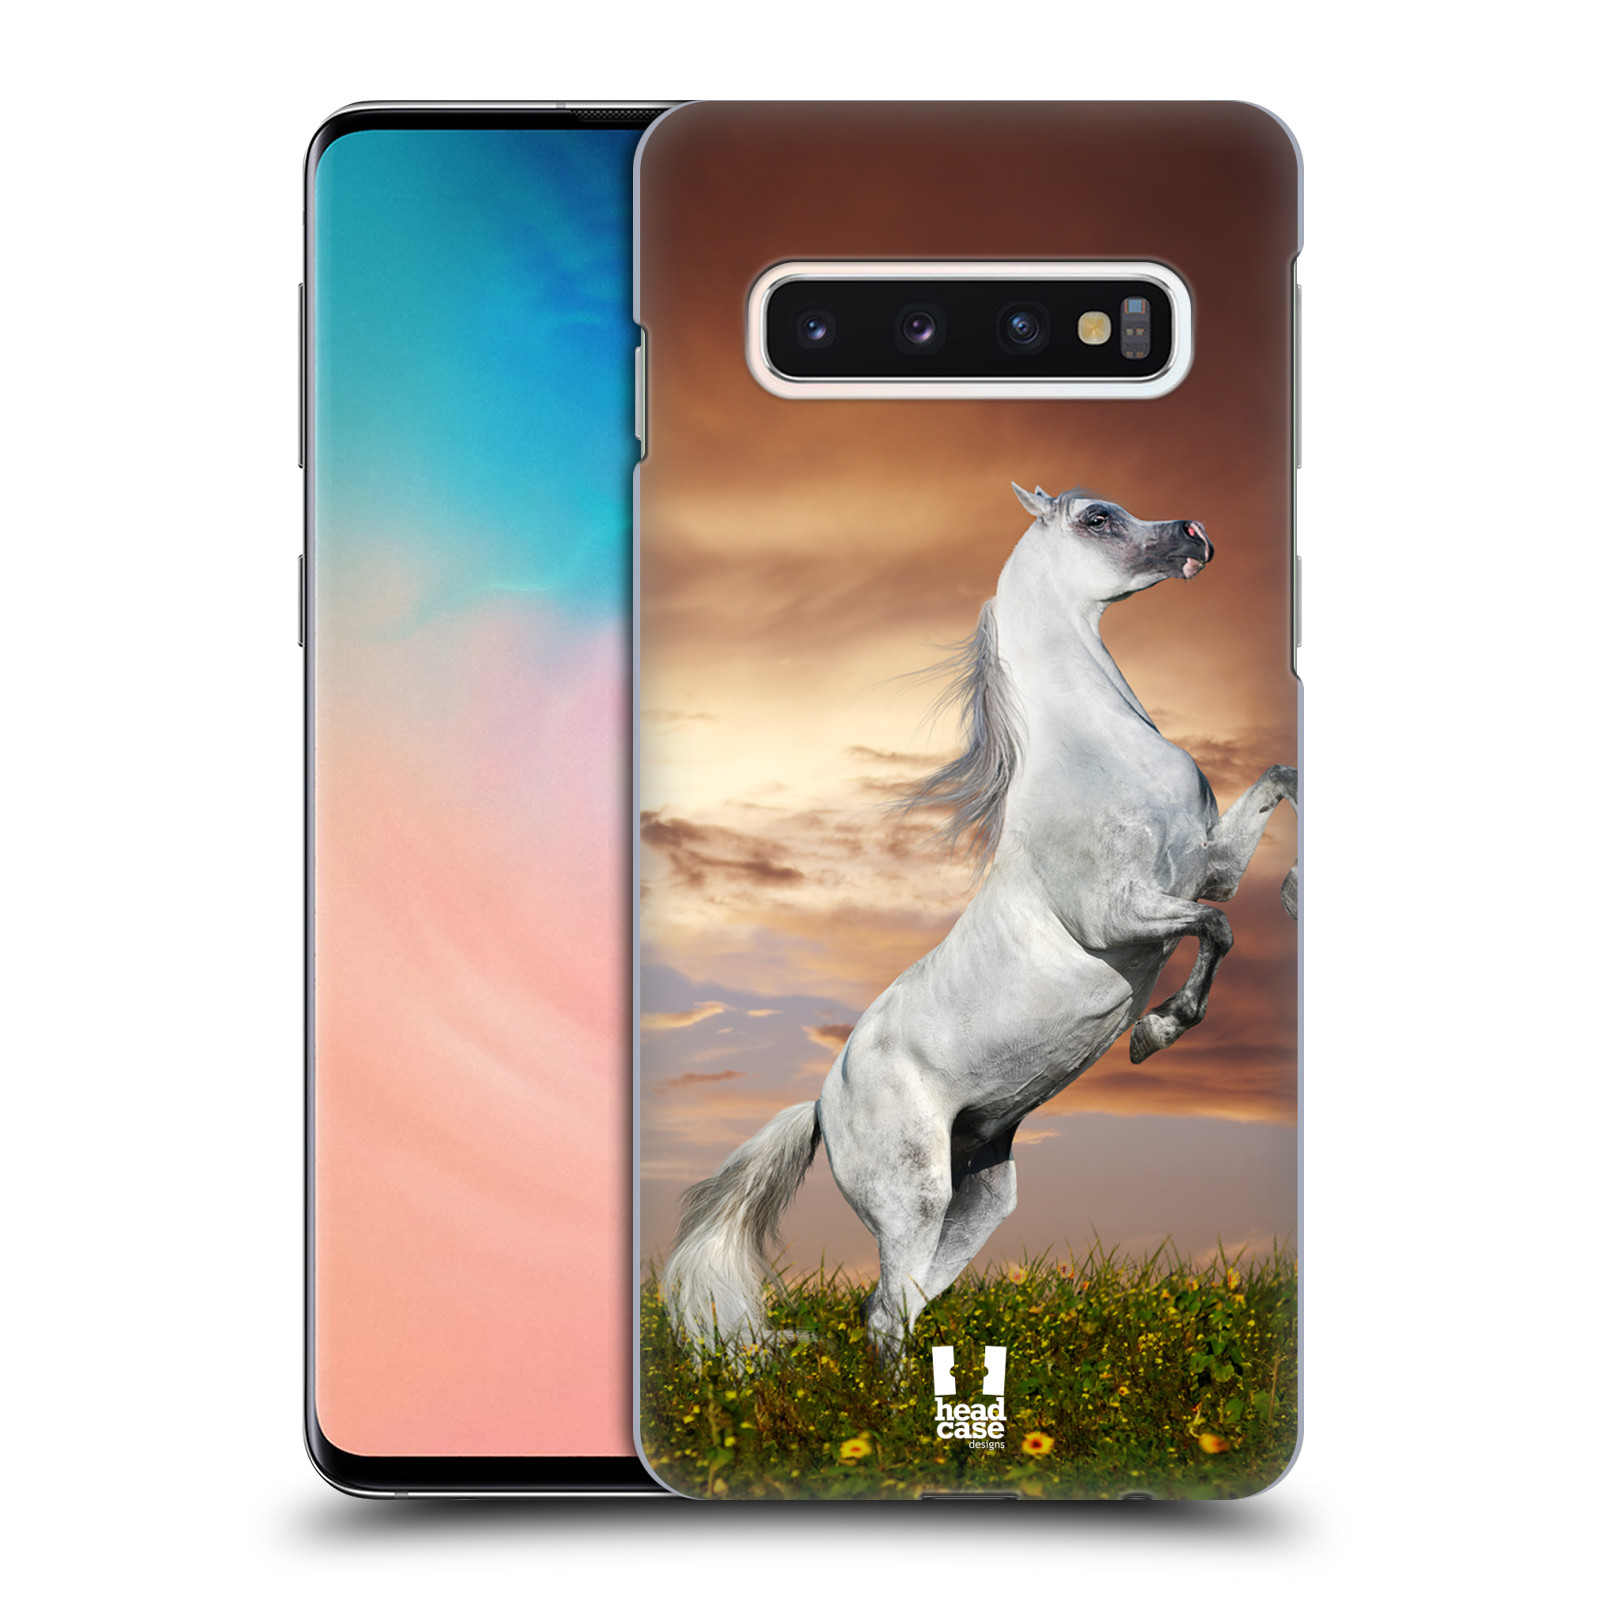 Zadní obal pro mobil Samsung Galaxy S10 - HEAD CASE - Svět zvířat divoký kůň